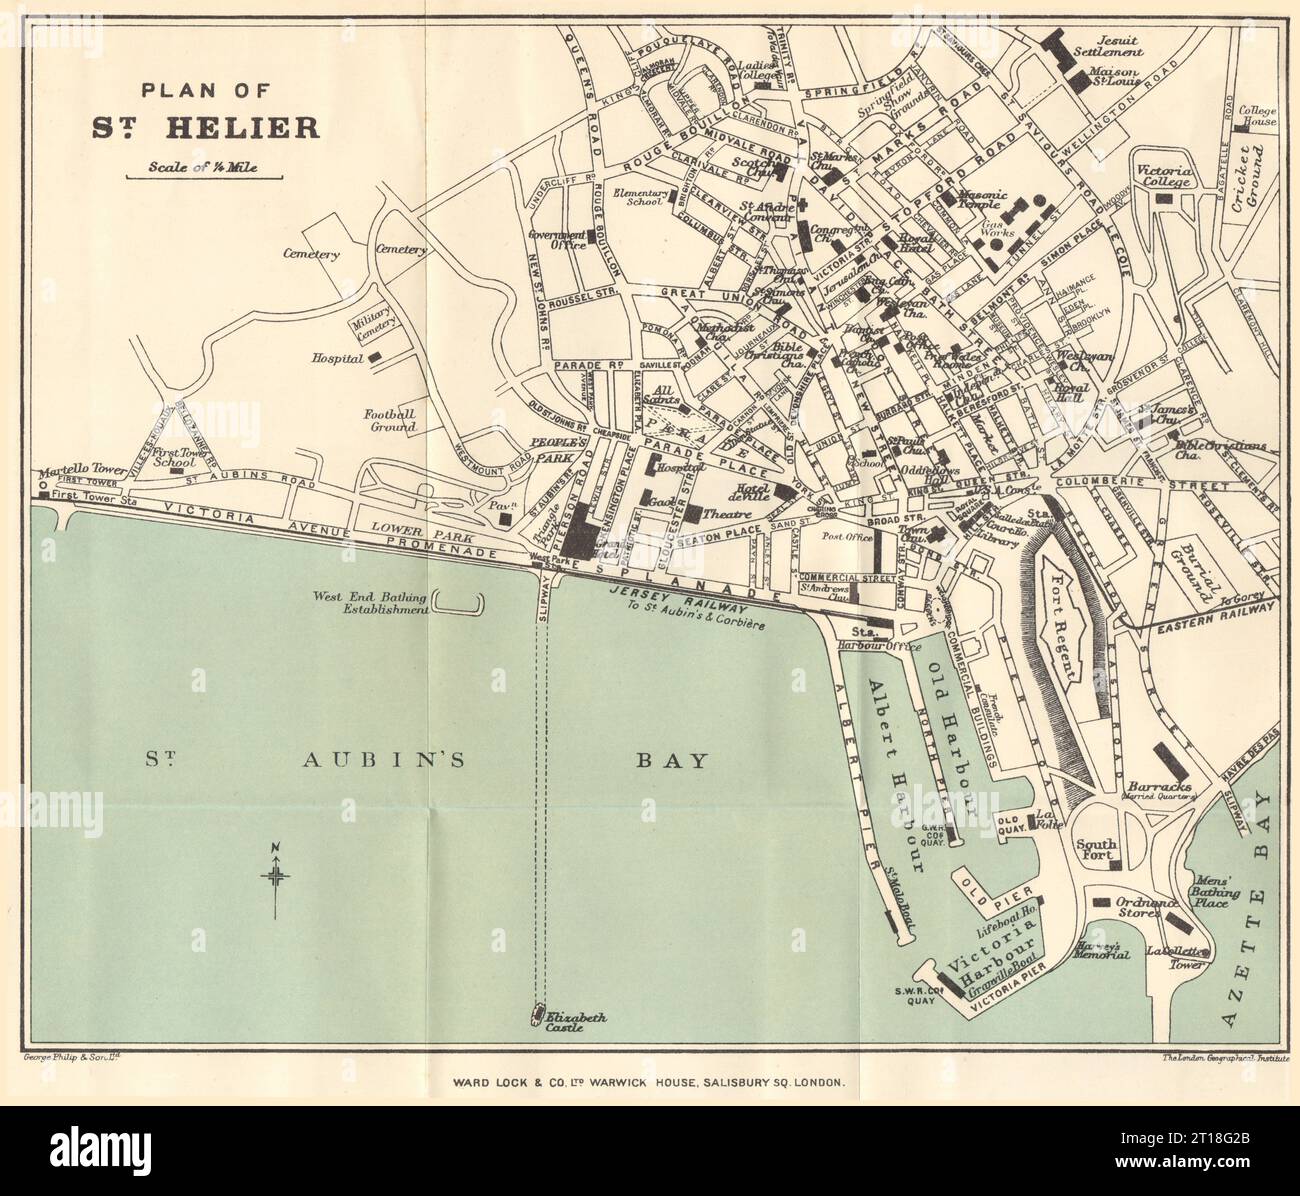 ST. HELIER vintage town/city plan. Jersey Channel Islands. WARD LOCK 1911 map Stock Photo